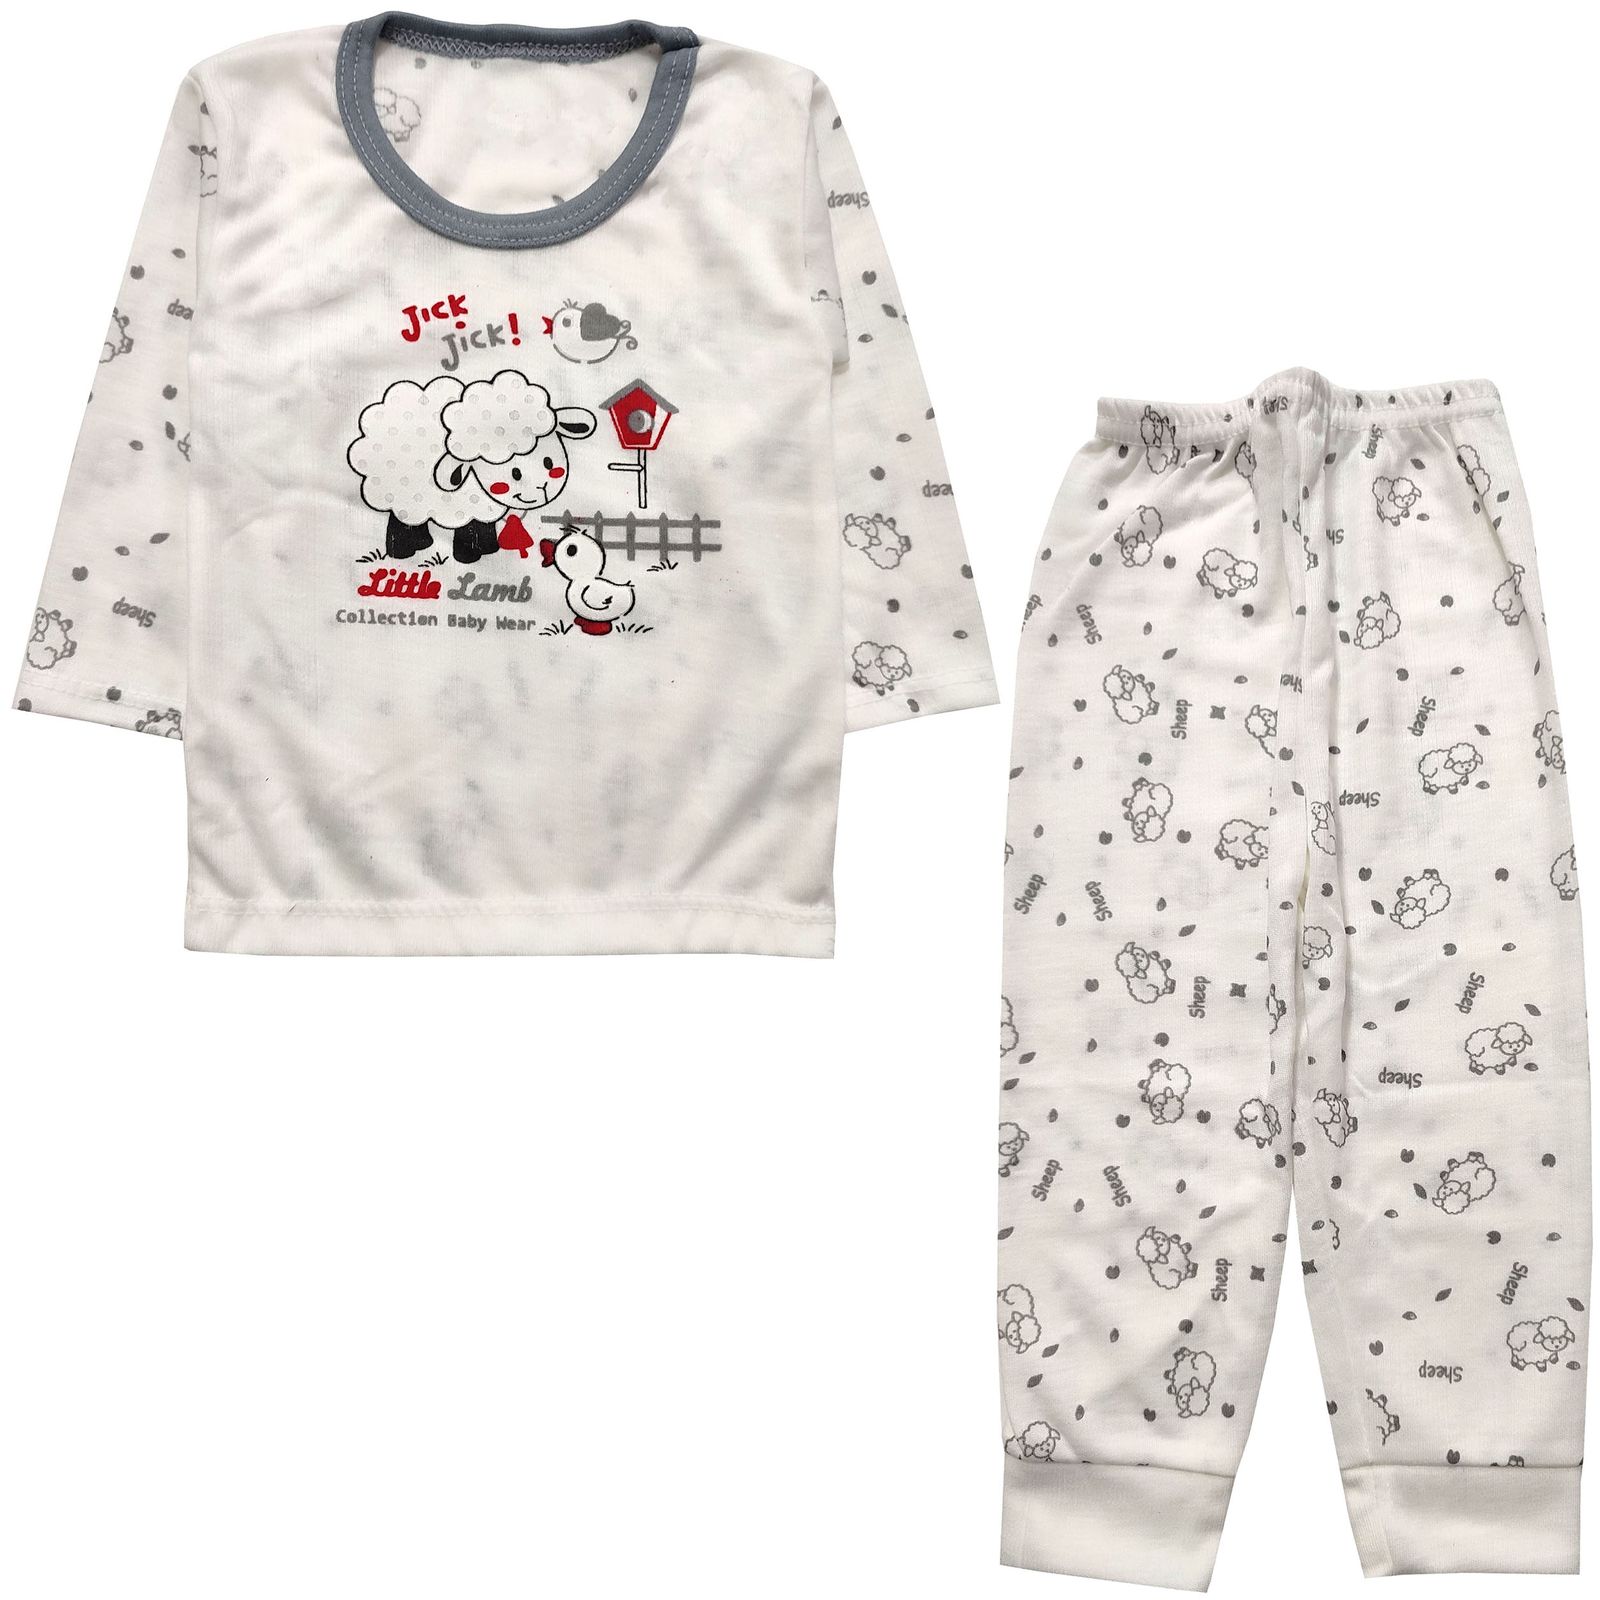 ست تی شرت و شلوار نوزادی مدل ببعی و اردک کد 3888 -  - 3